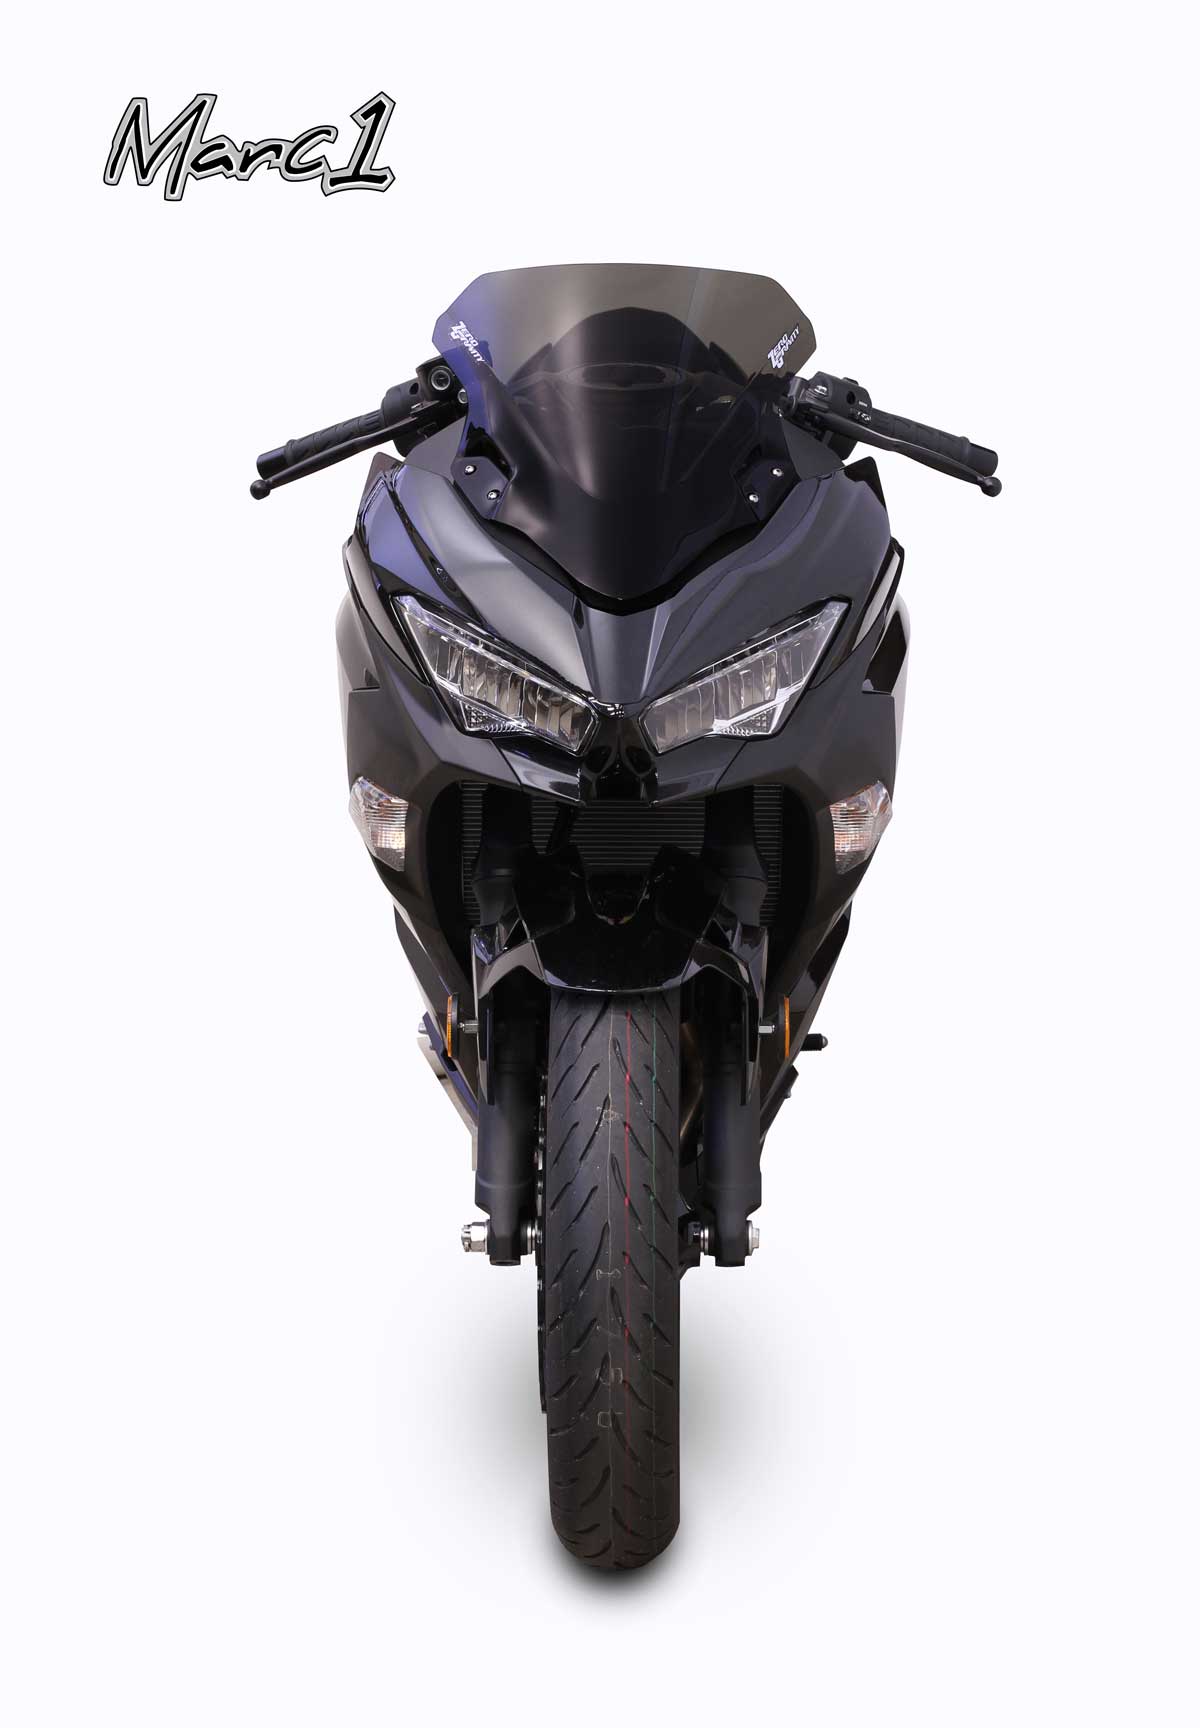 Kawasaki Ninja 250R (Non-US Model) 18-2019 – Zero Gravity Racing